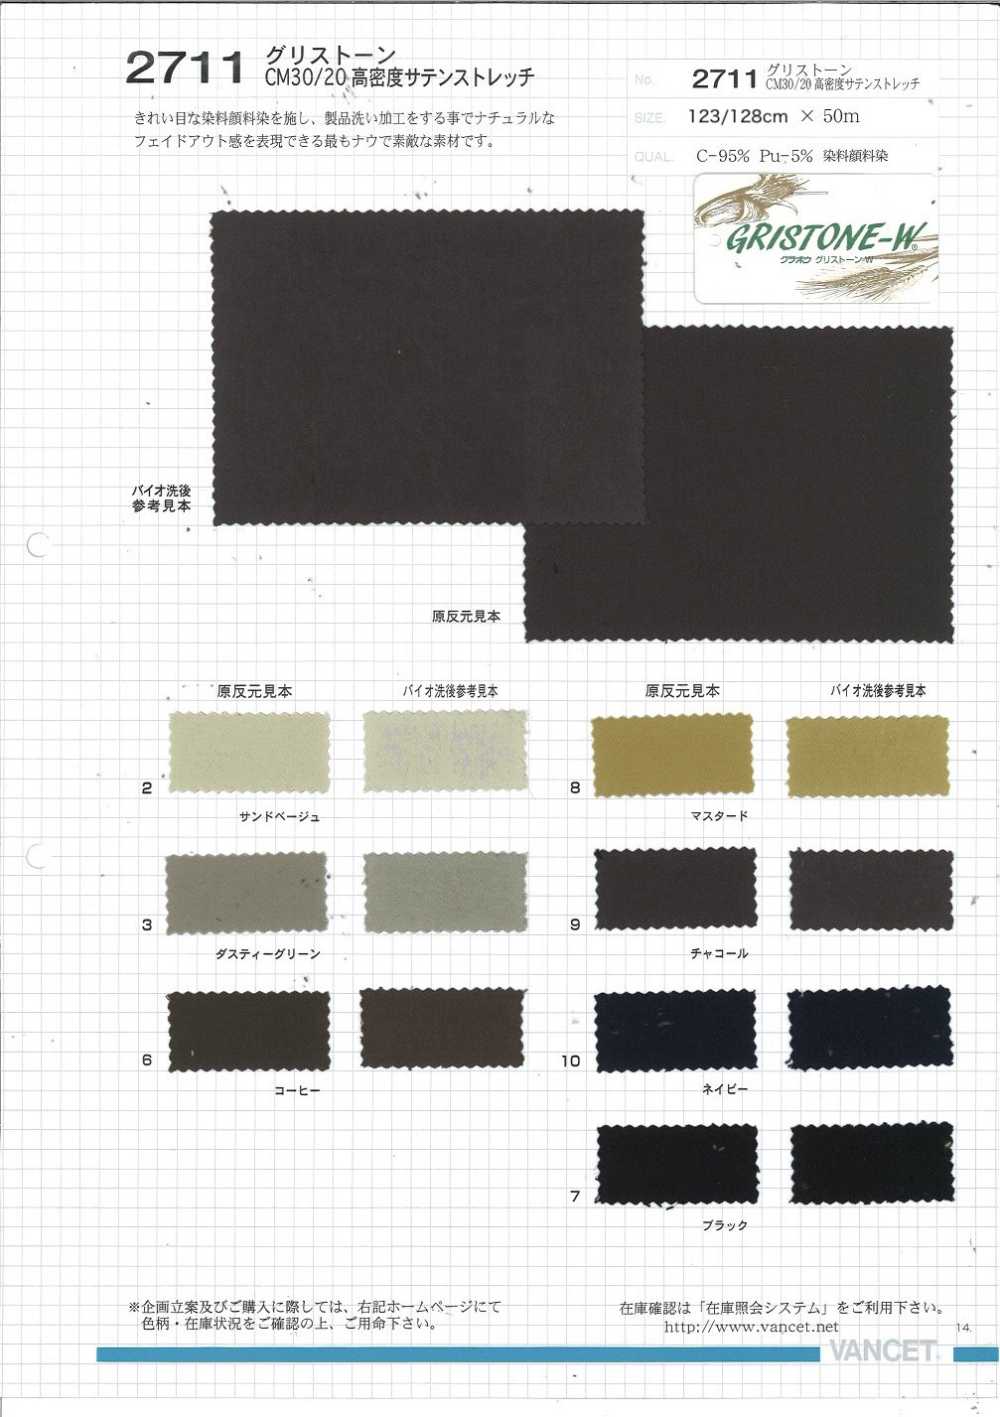 2711 Tinte De Pigmento De Tinte Elástico Satinado De Alta Densidad Grisstone CM30 / 20[Fabrica Textil] VANCET